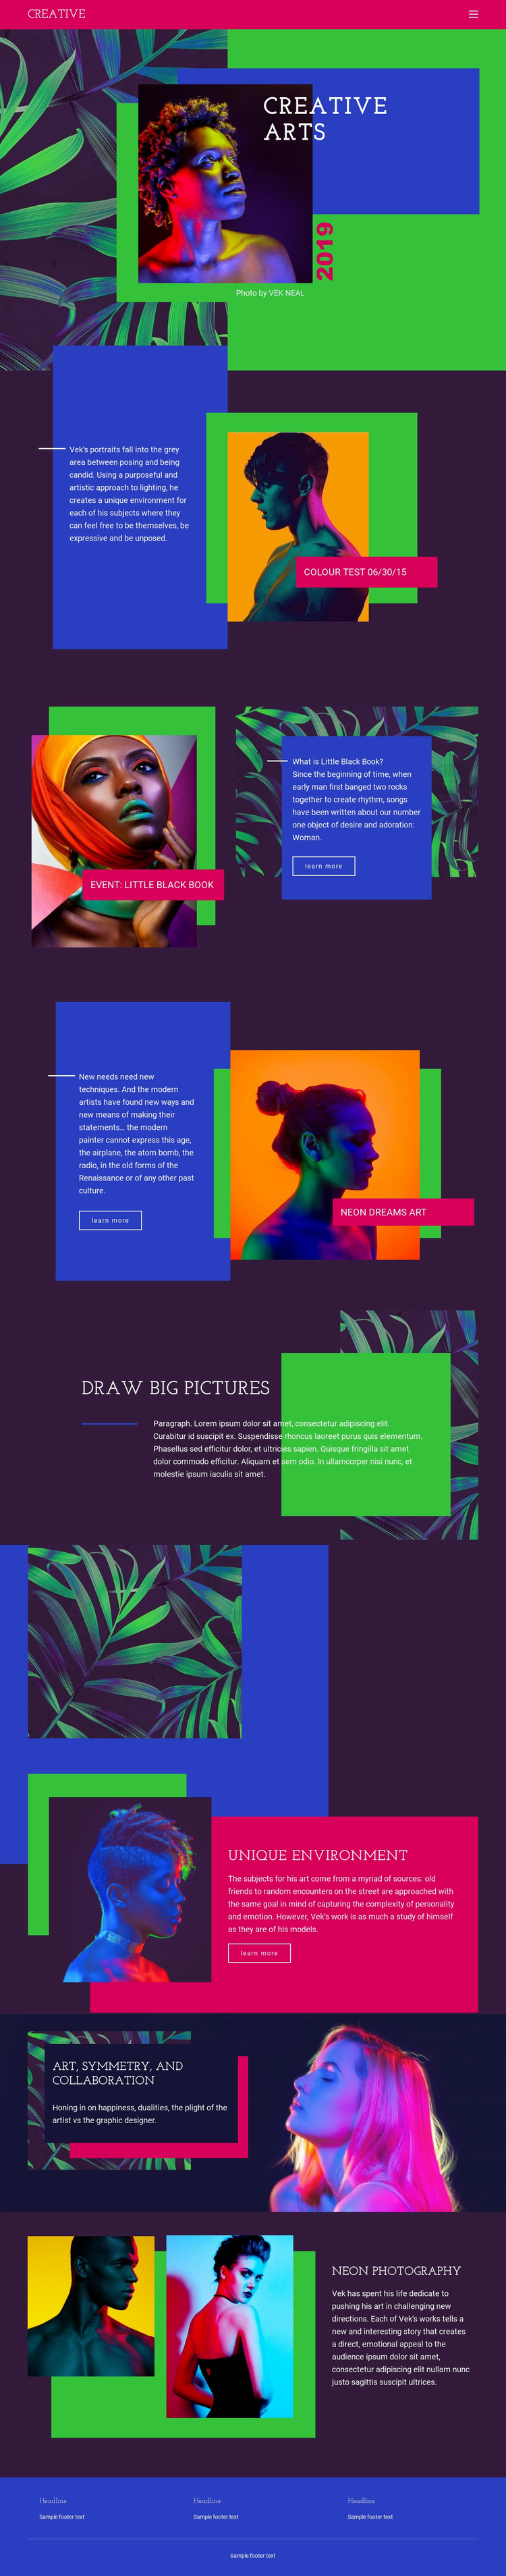 Creative Art Ideas Website Design